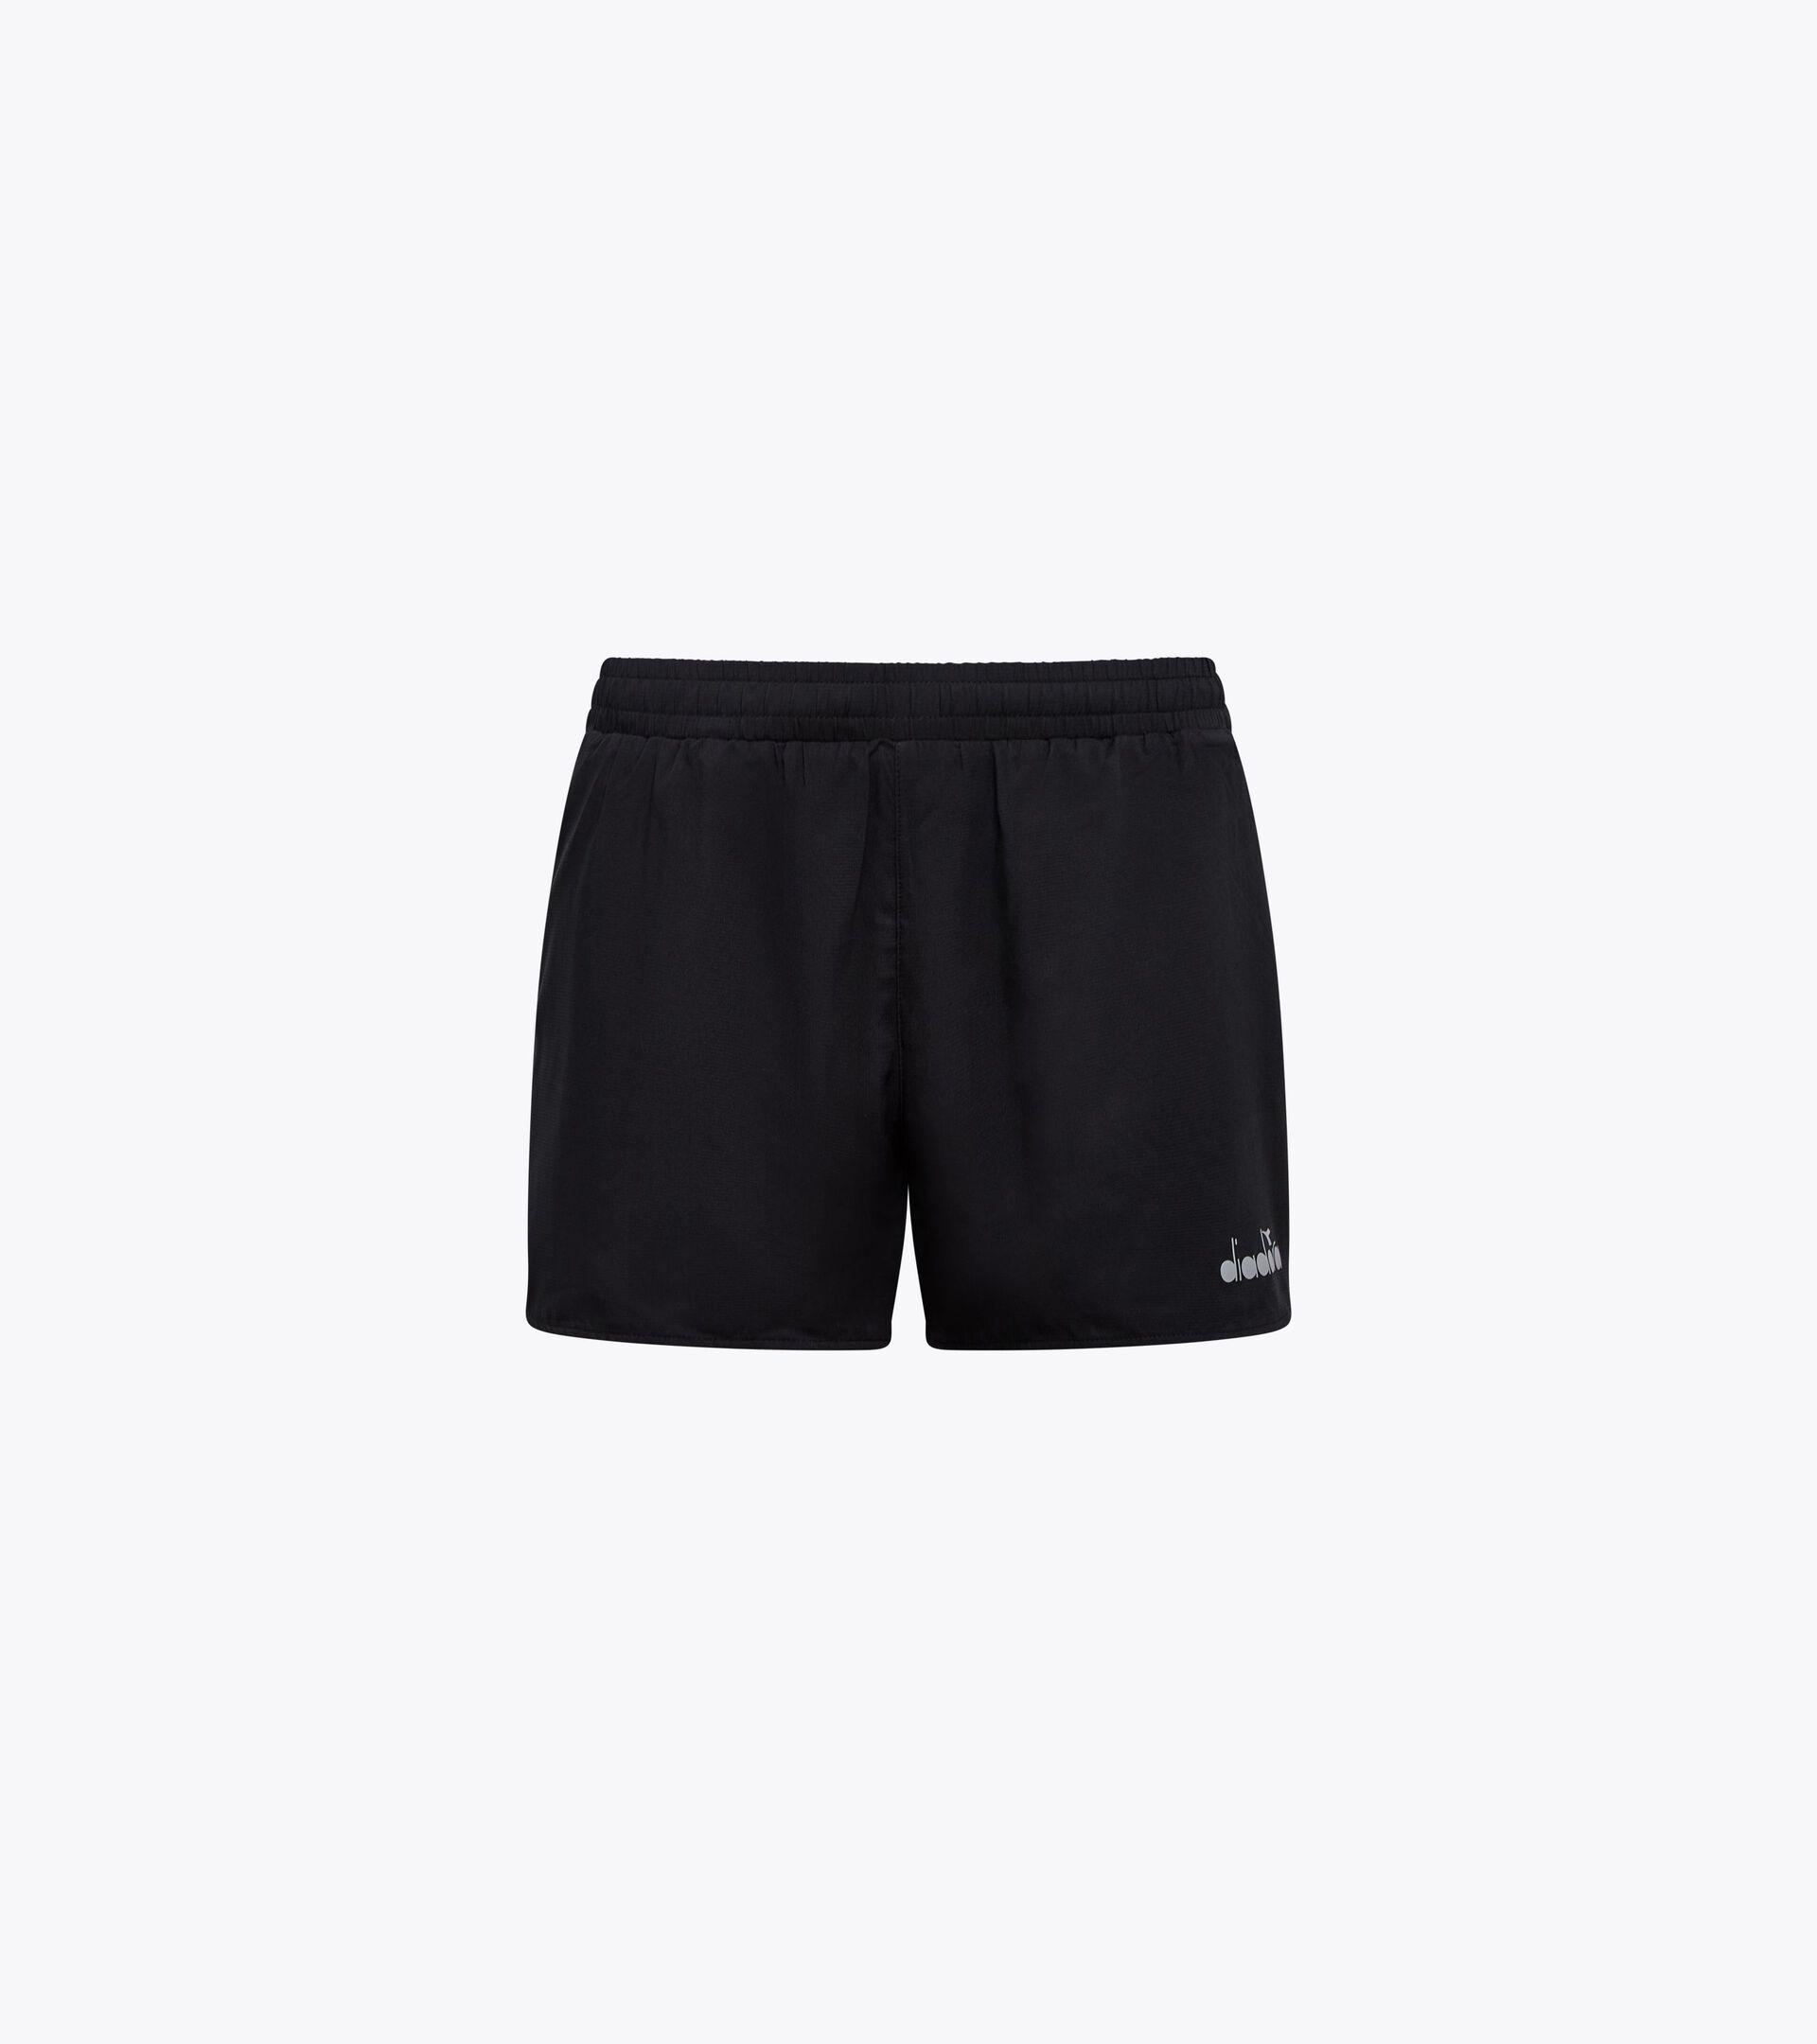 5’’ running shorts - Light fabric - Men’s
 SUPER LIGHT SHORTS 5" BLACK - Diadora